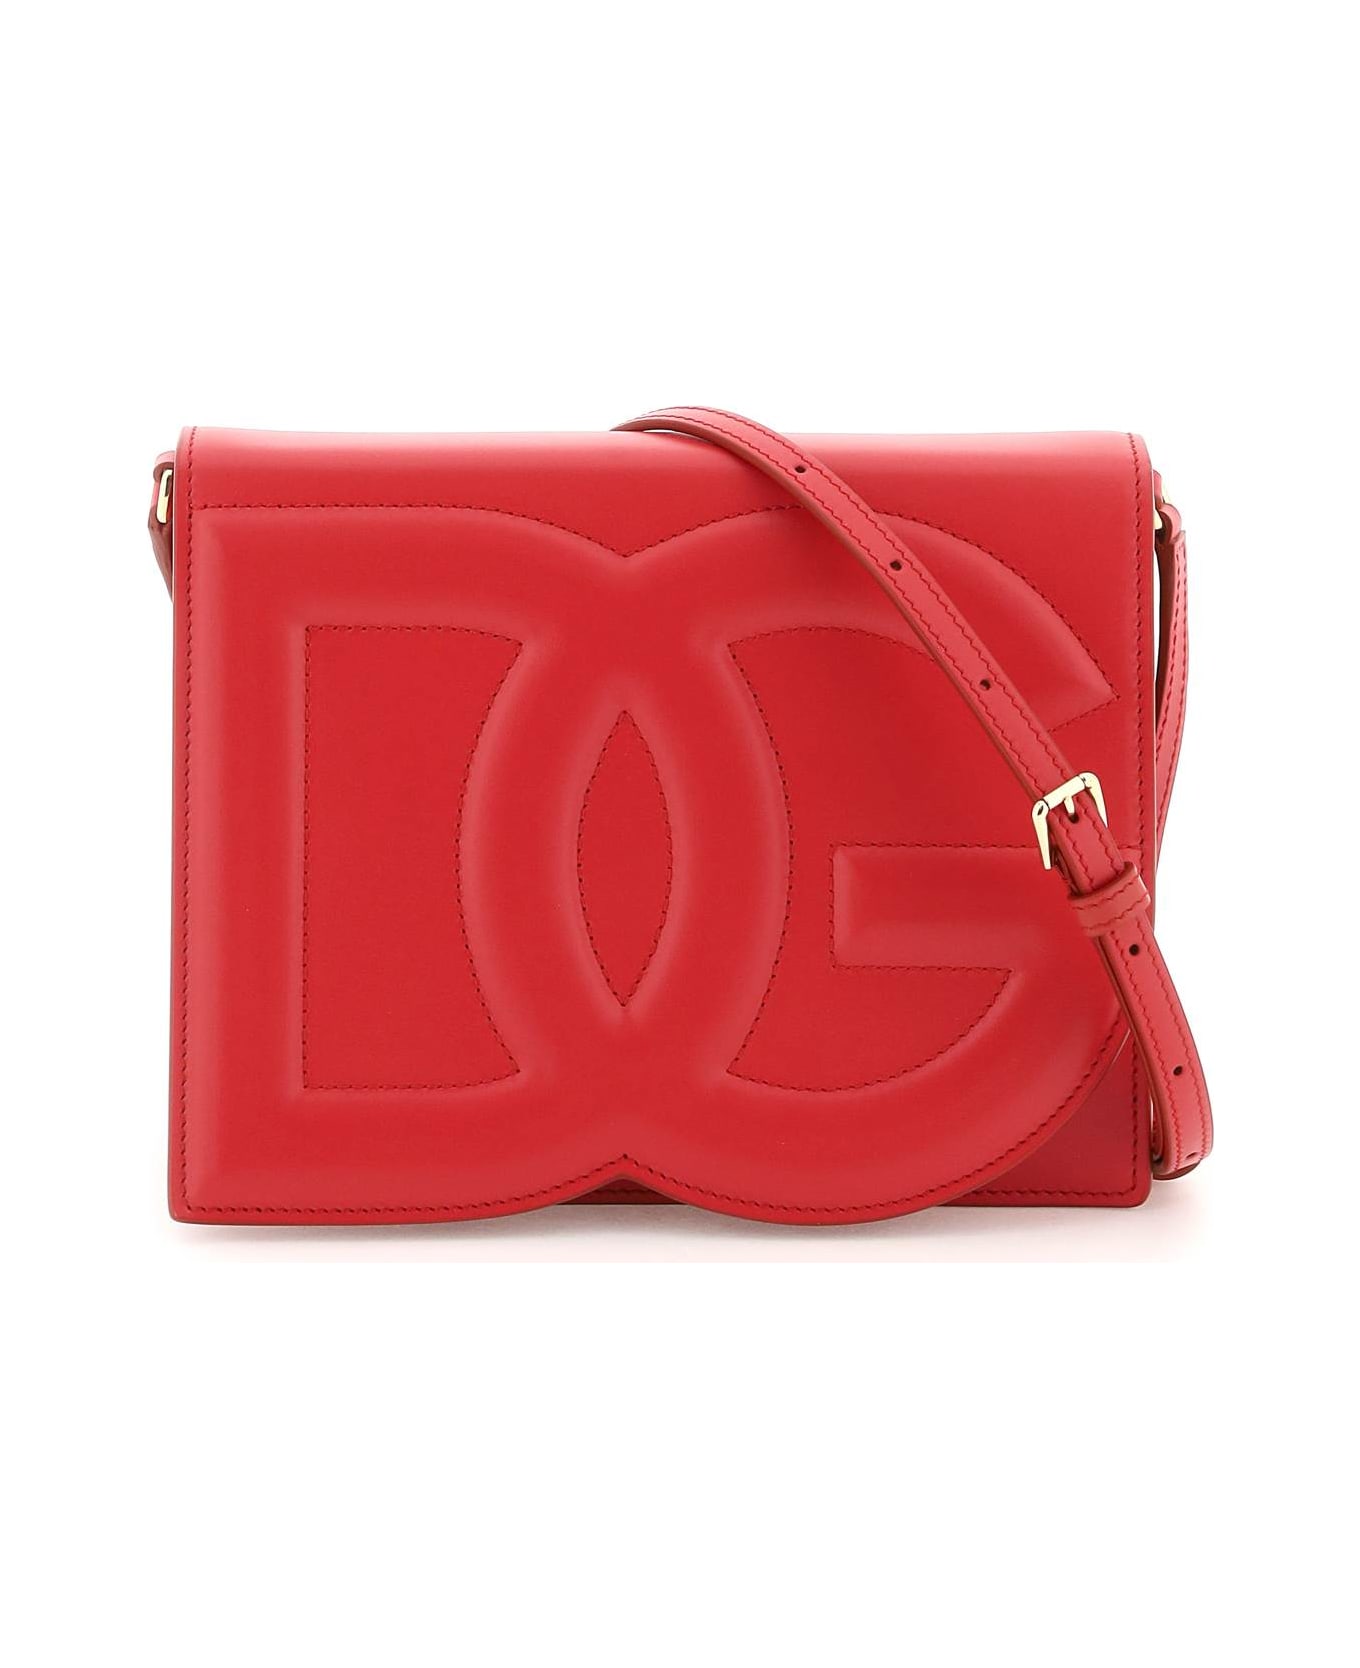 Dolce & Gabbana Leather Shoulder Bag - Rosso